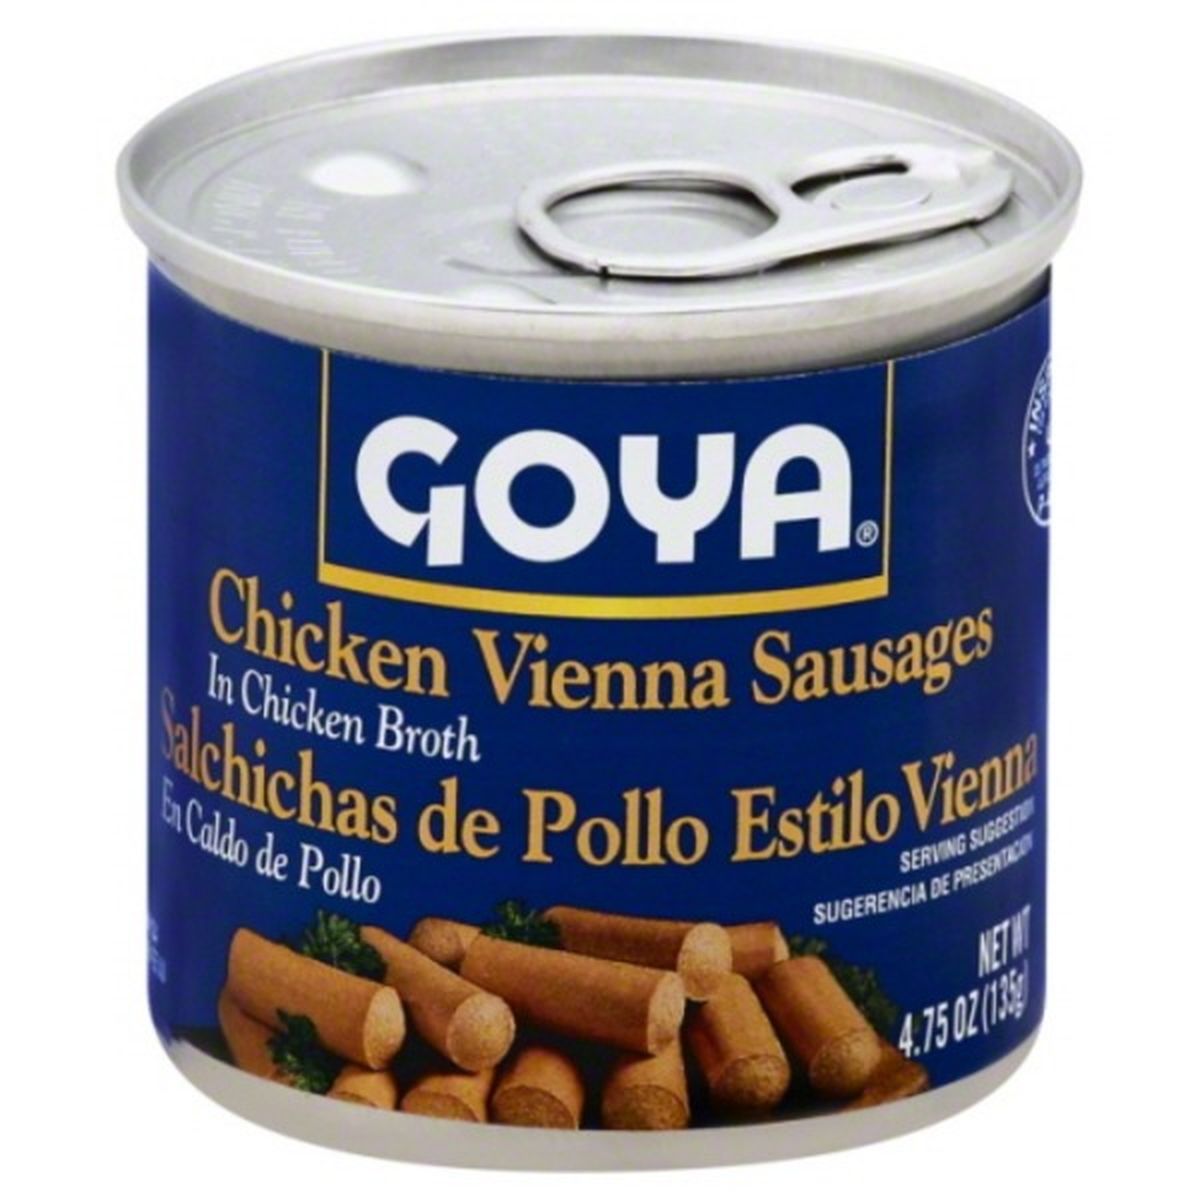 Calories in Goya Vienna Sausages, Chicken